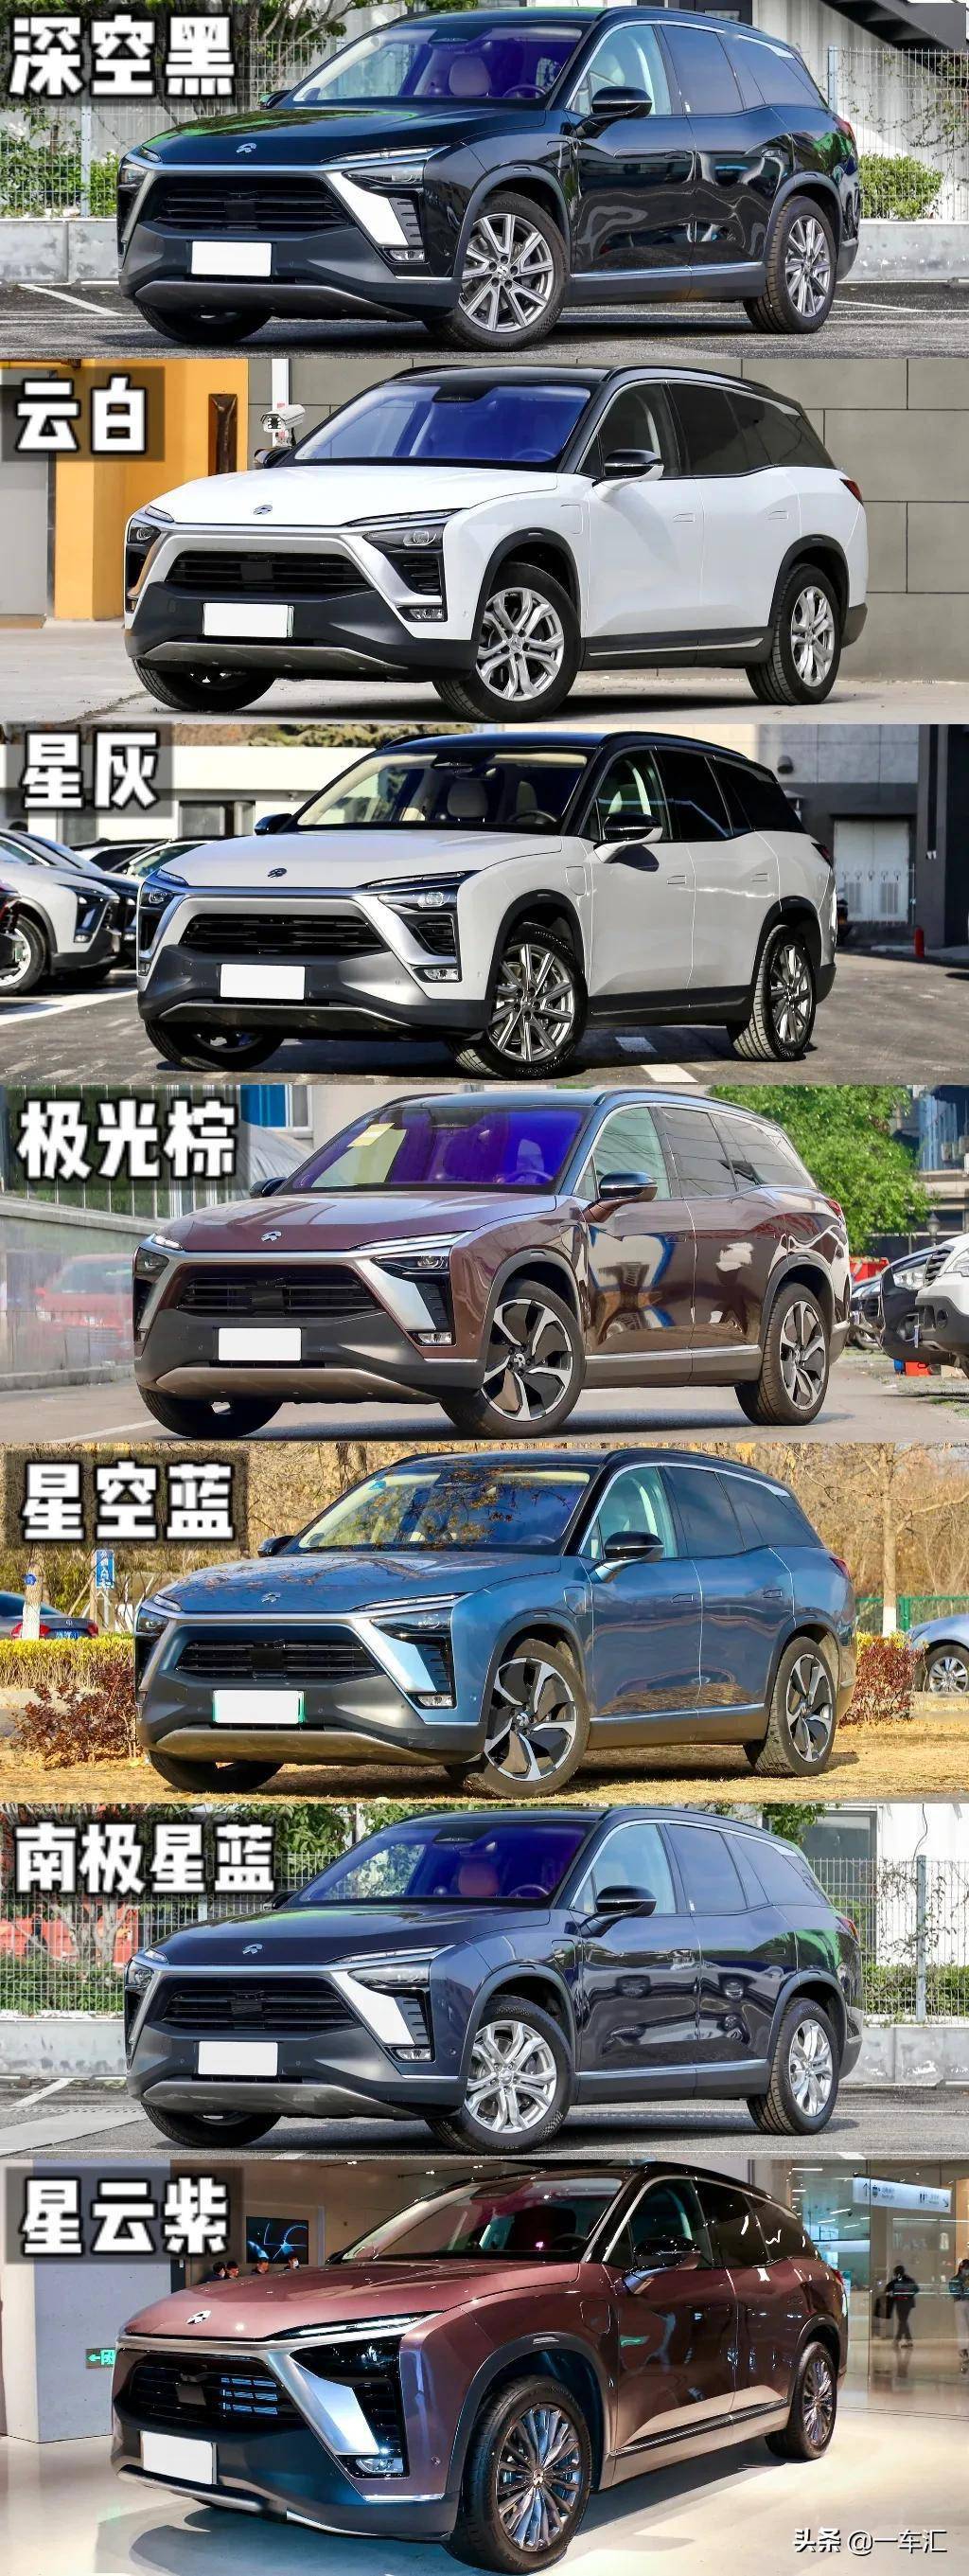 造车新势力明星产品,蔚来es8配置解读,豪华实用两不误_搜狐汽车_搜狐